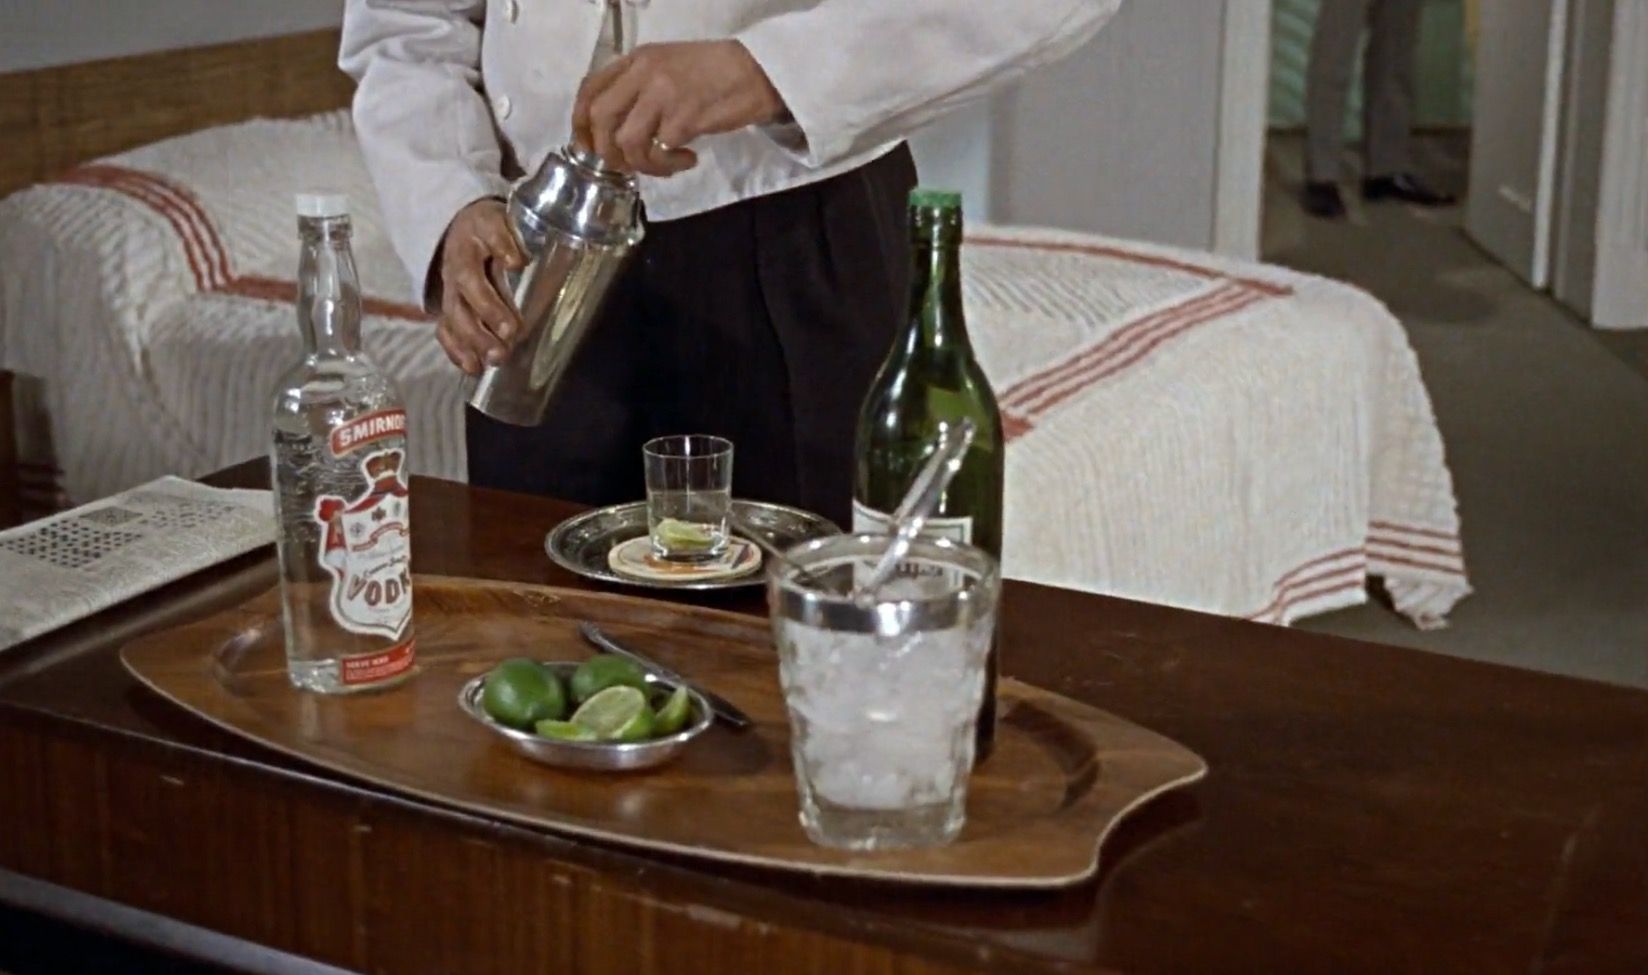 Smirnoff Vodka in "Dr No"